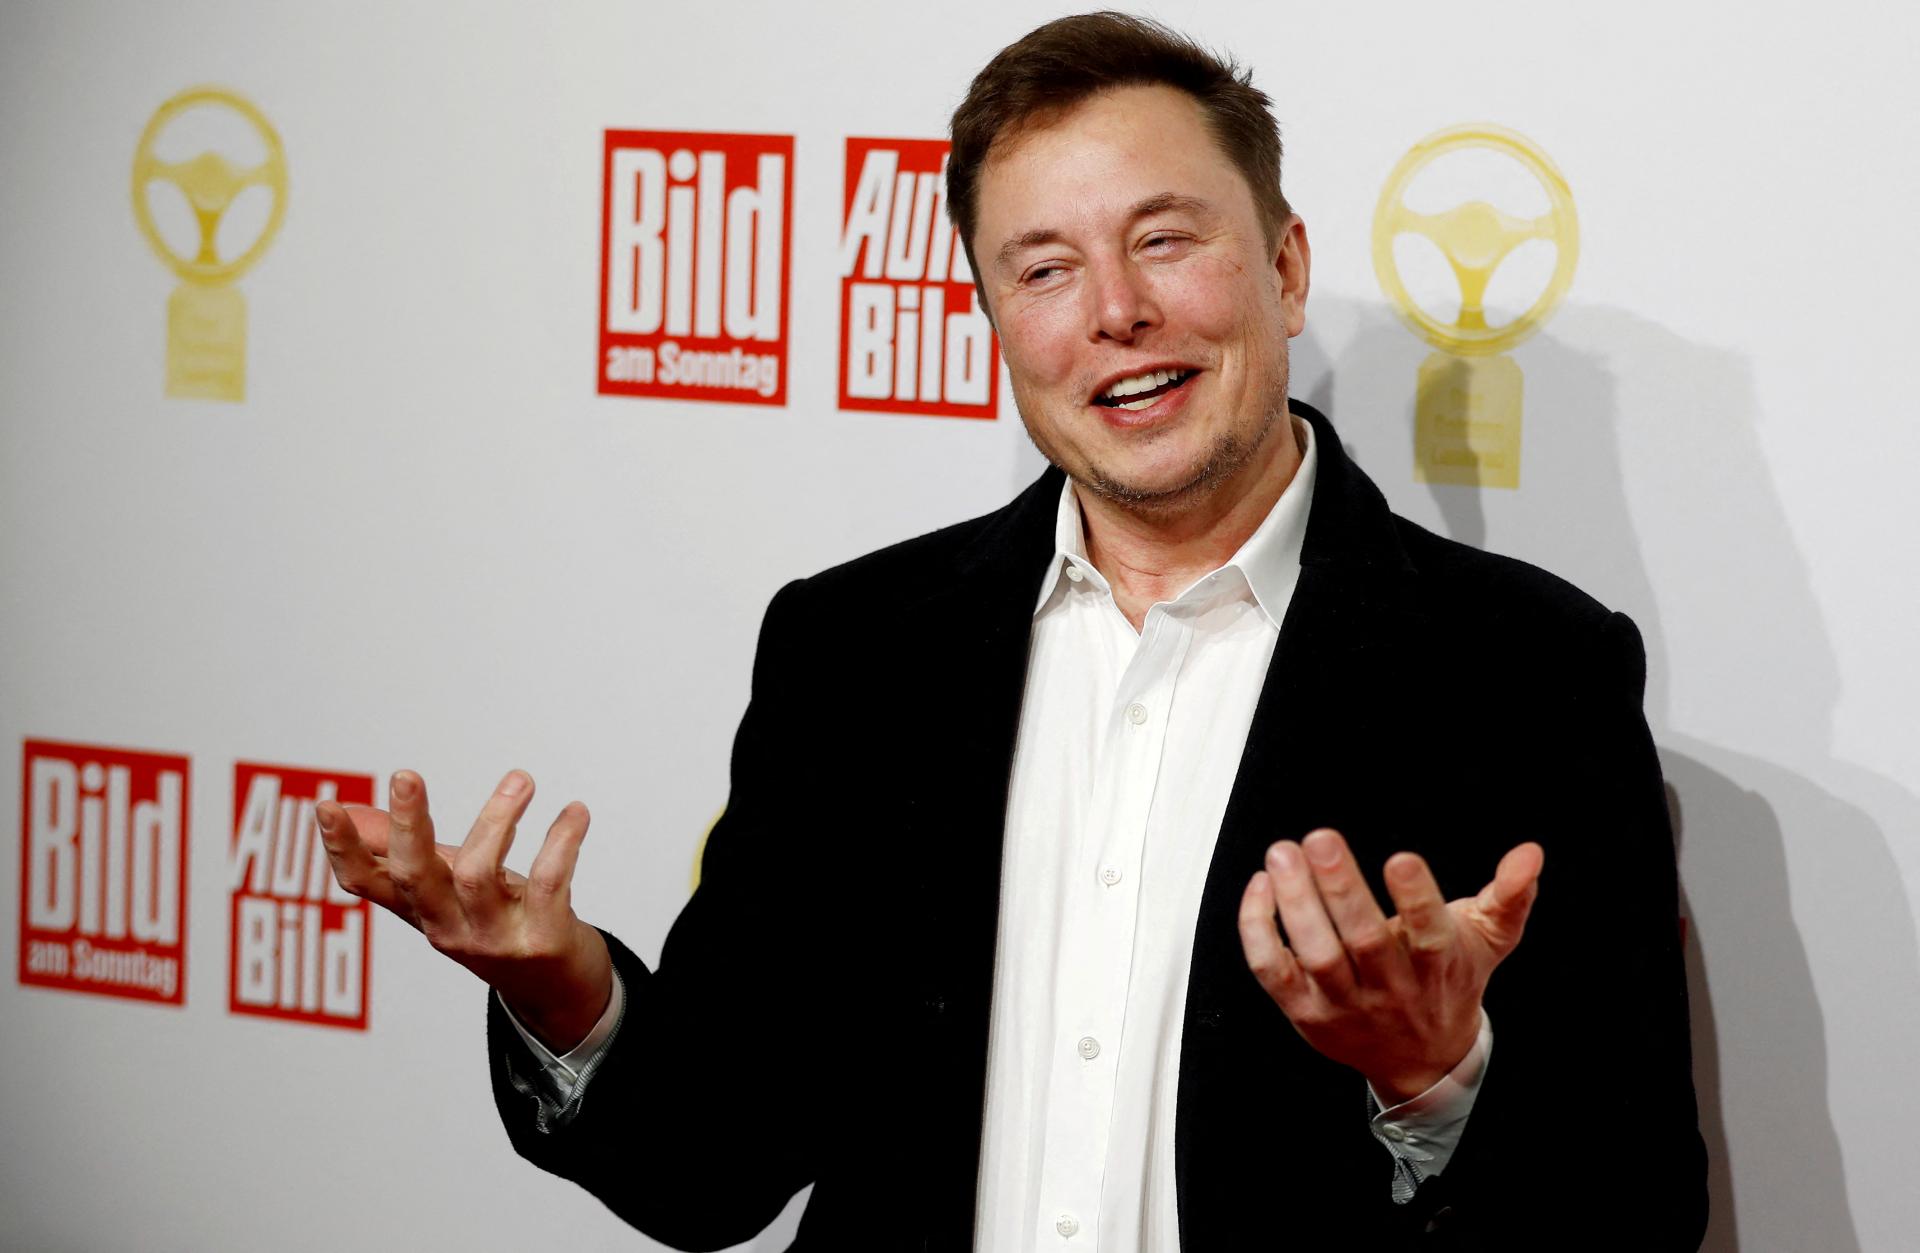 Musk sa vrátil na pozíciu najbohatšieho človeka sveta, uvádza Bloomberg